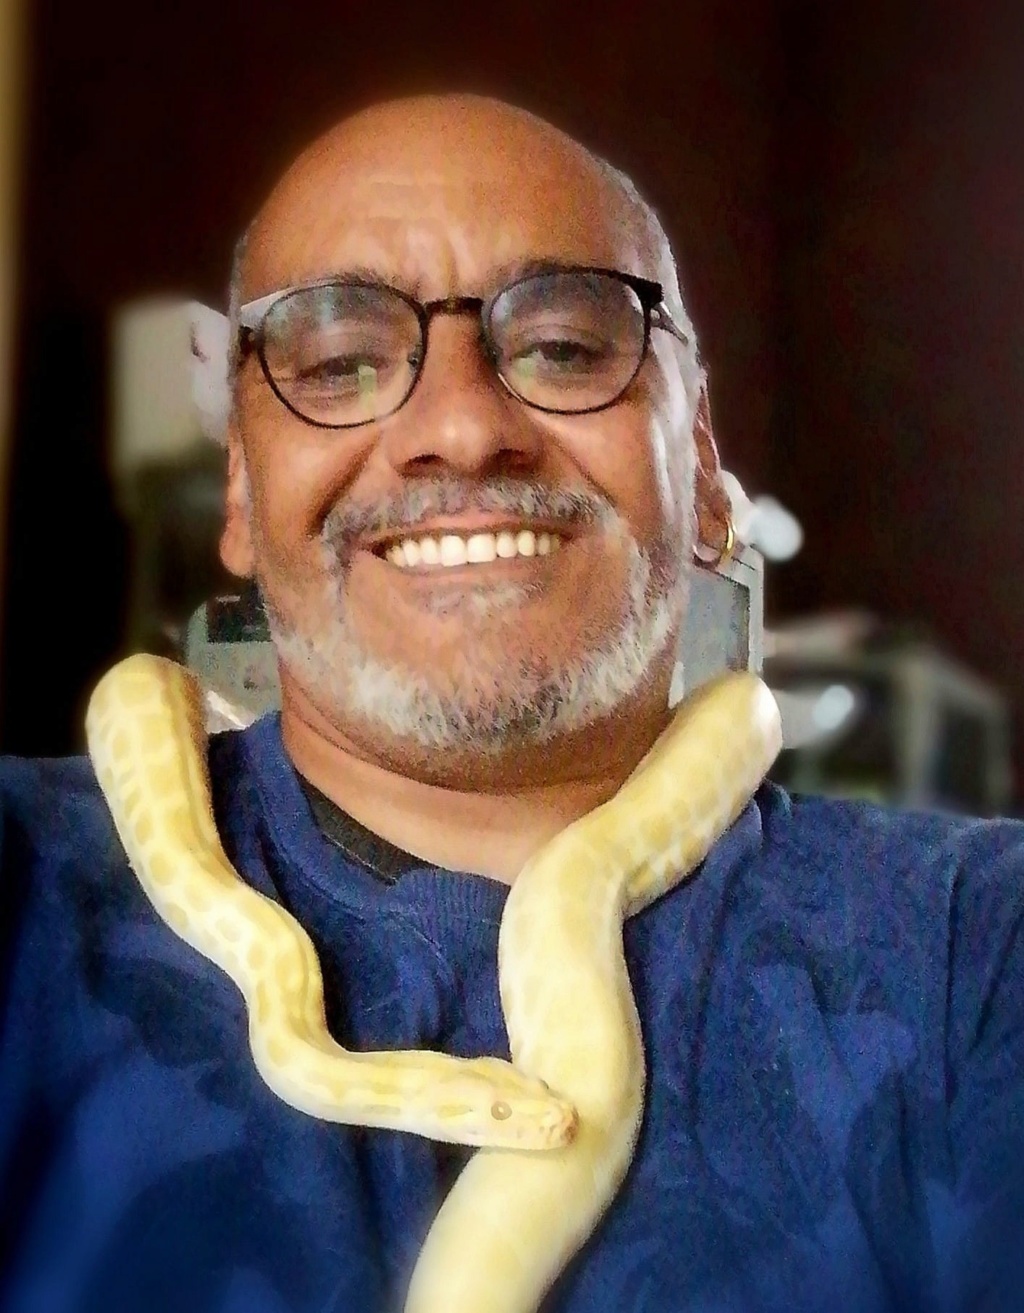 Mes pythons bivittatus et boa imperator, mes protégés 71204710